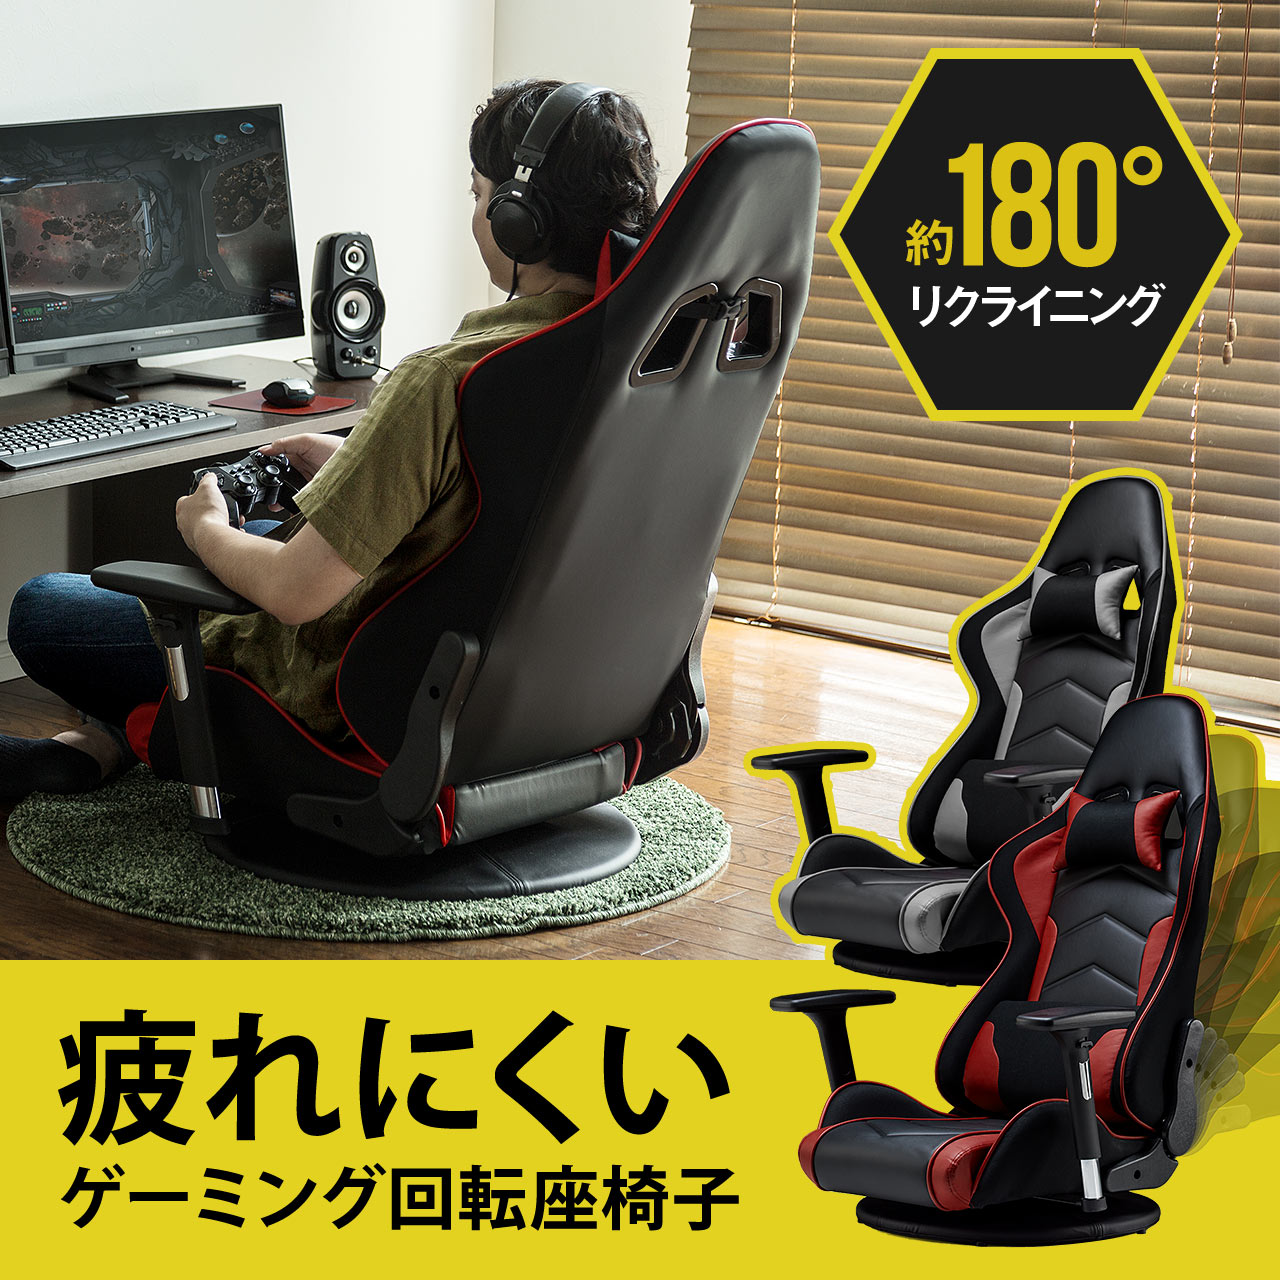 デザインさ Darkecho ゲーミングチェア 座椅子 360回転 155度リクライニング ハイバック 連動肘掛け付き ヘッドレスト ランバー